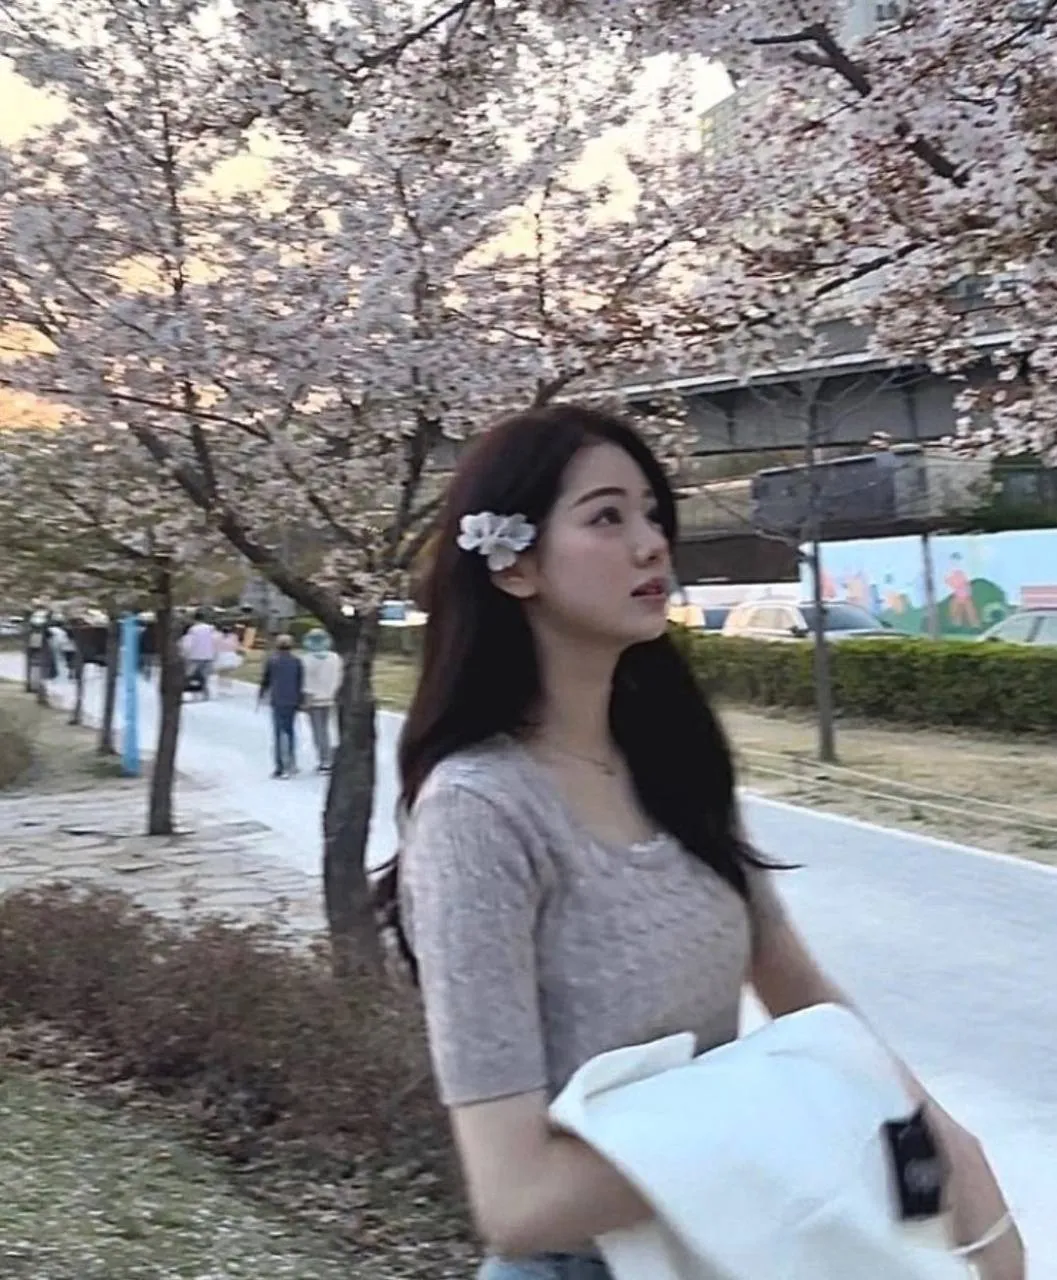 Se rumorea que la aprendiz de SM recibe elogios por sus imágenes: "Se parece a Song Hye Kyo..."